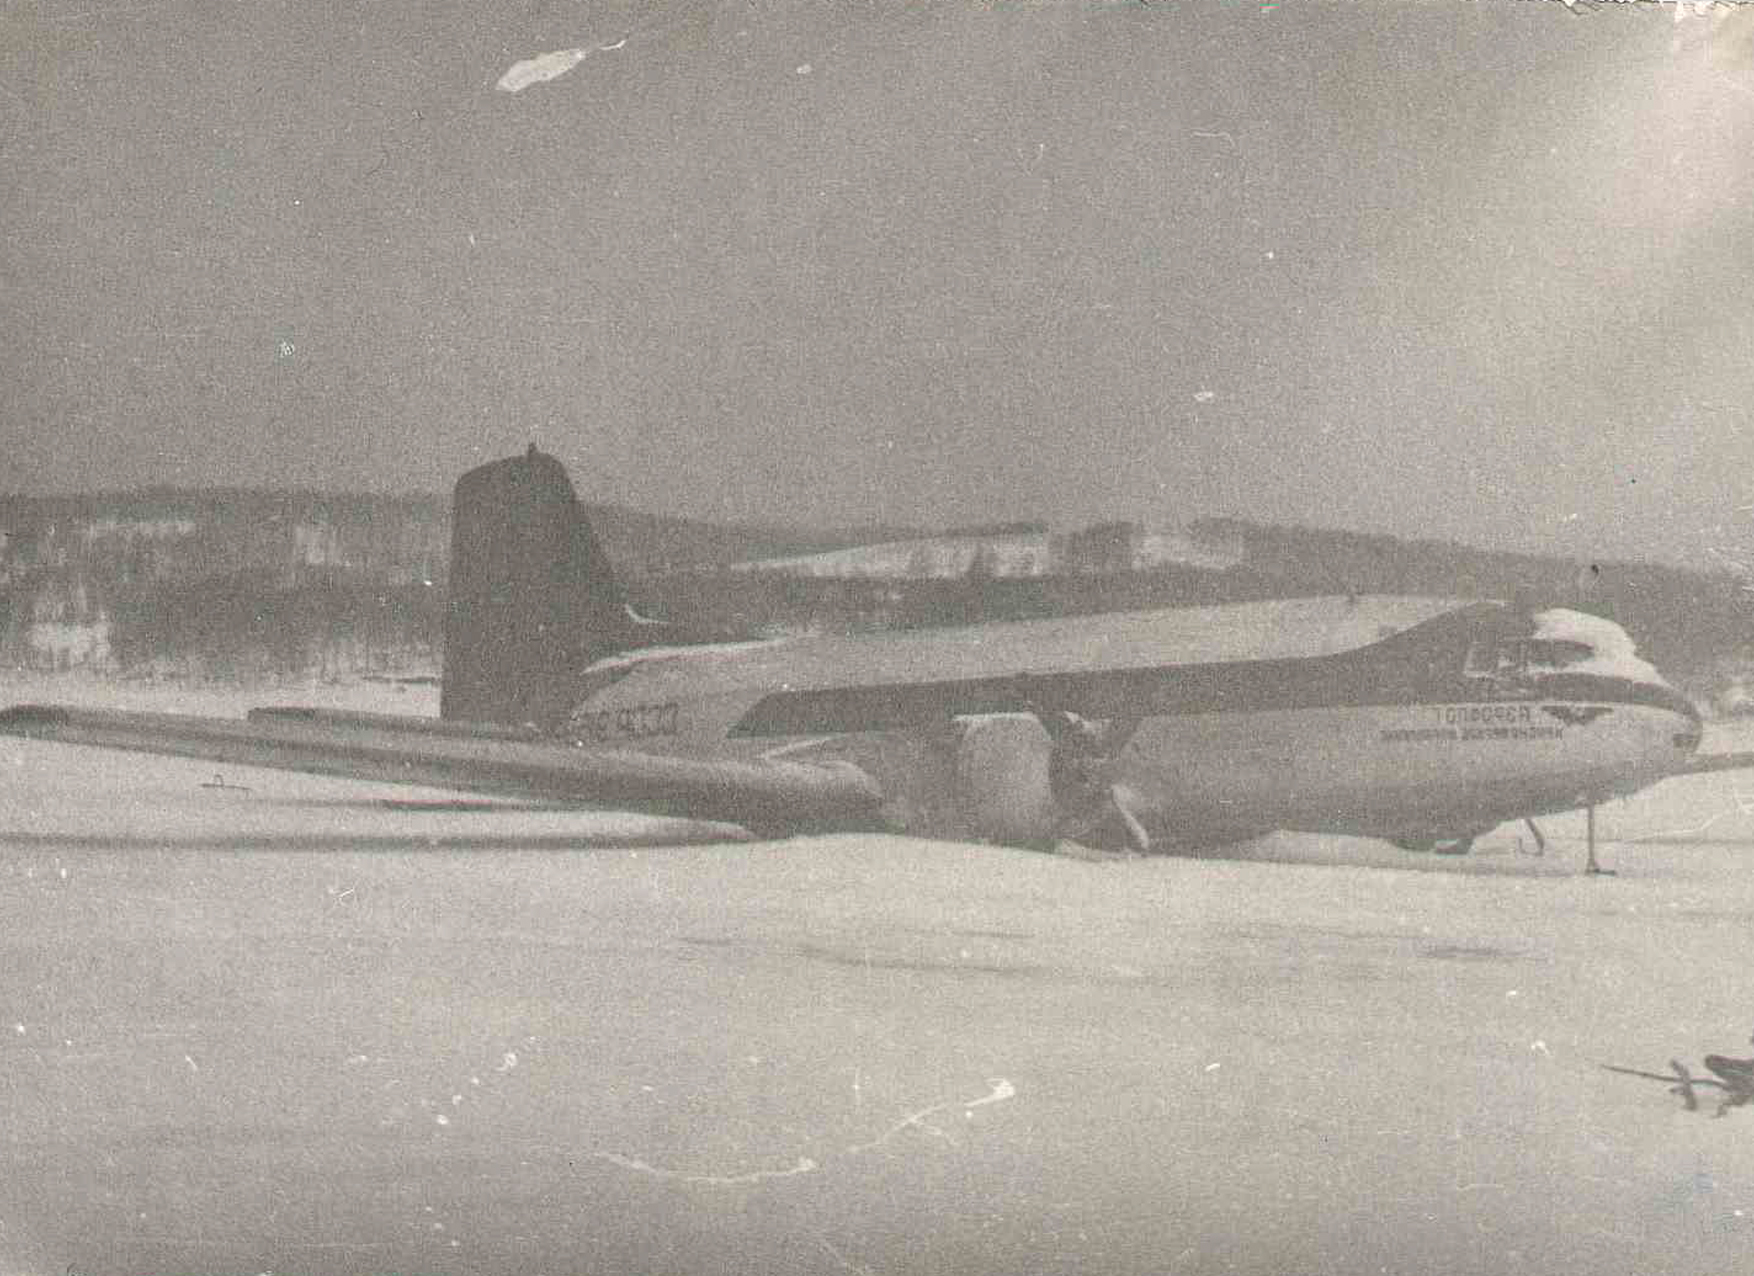 Валентин Иванович Тараканов удачно совершил на Енисее вынужденную посадку самолёта Ил-14 с двумя отказавшими двигателями